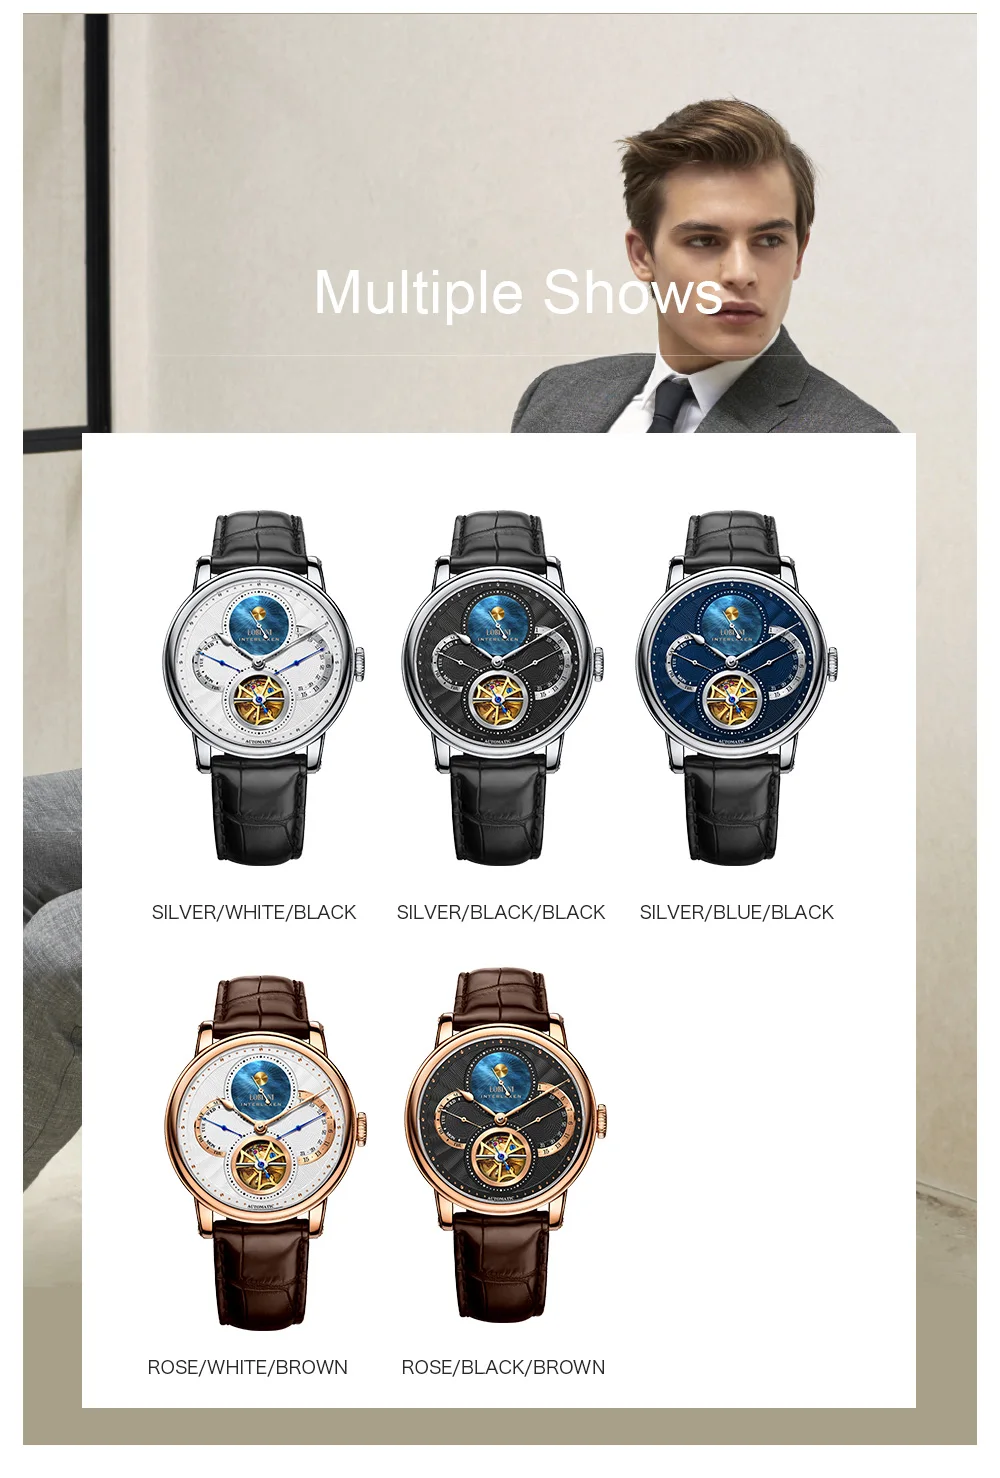 Швейцарские роскошные Брендовые мужские часы, дизайнерские часы с скелетом, Mechan Automat, мужские наручные часы с чайкой, мужские часы с сапфировым кожаным ремешком